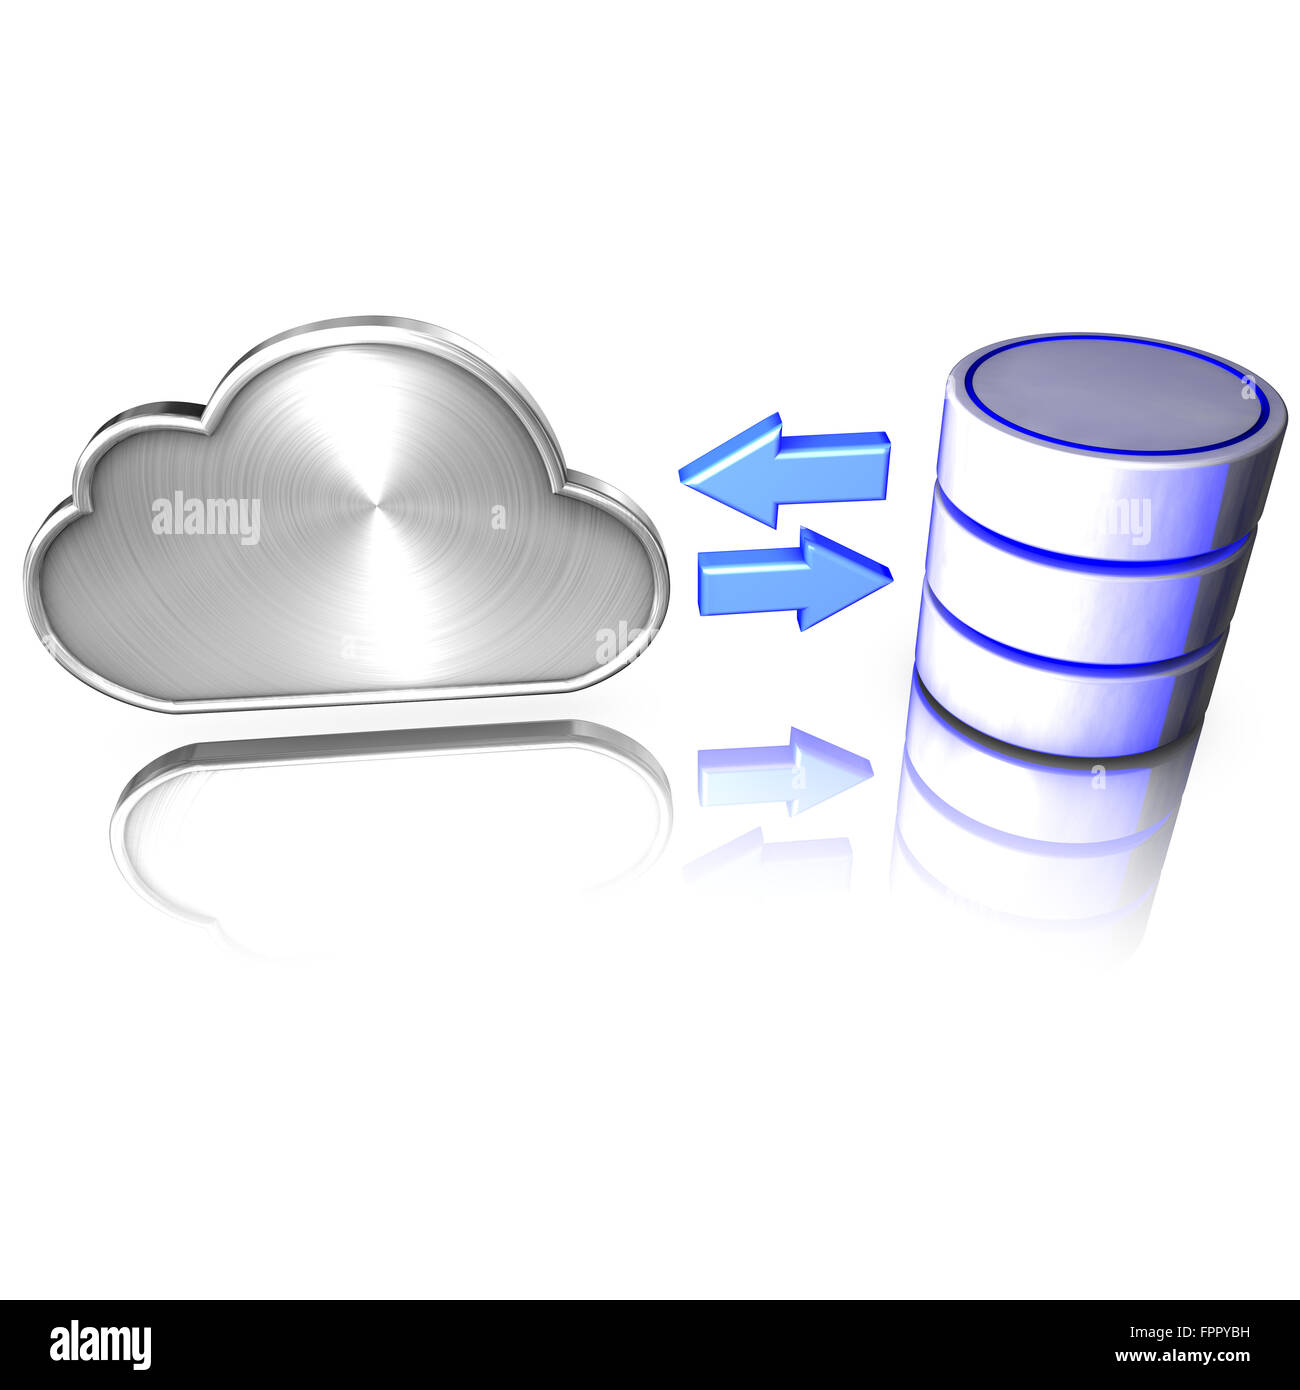 Eine Datenbank bietet Dienste in die cloud Stockfoto